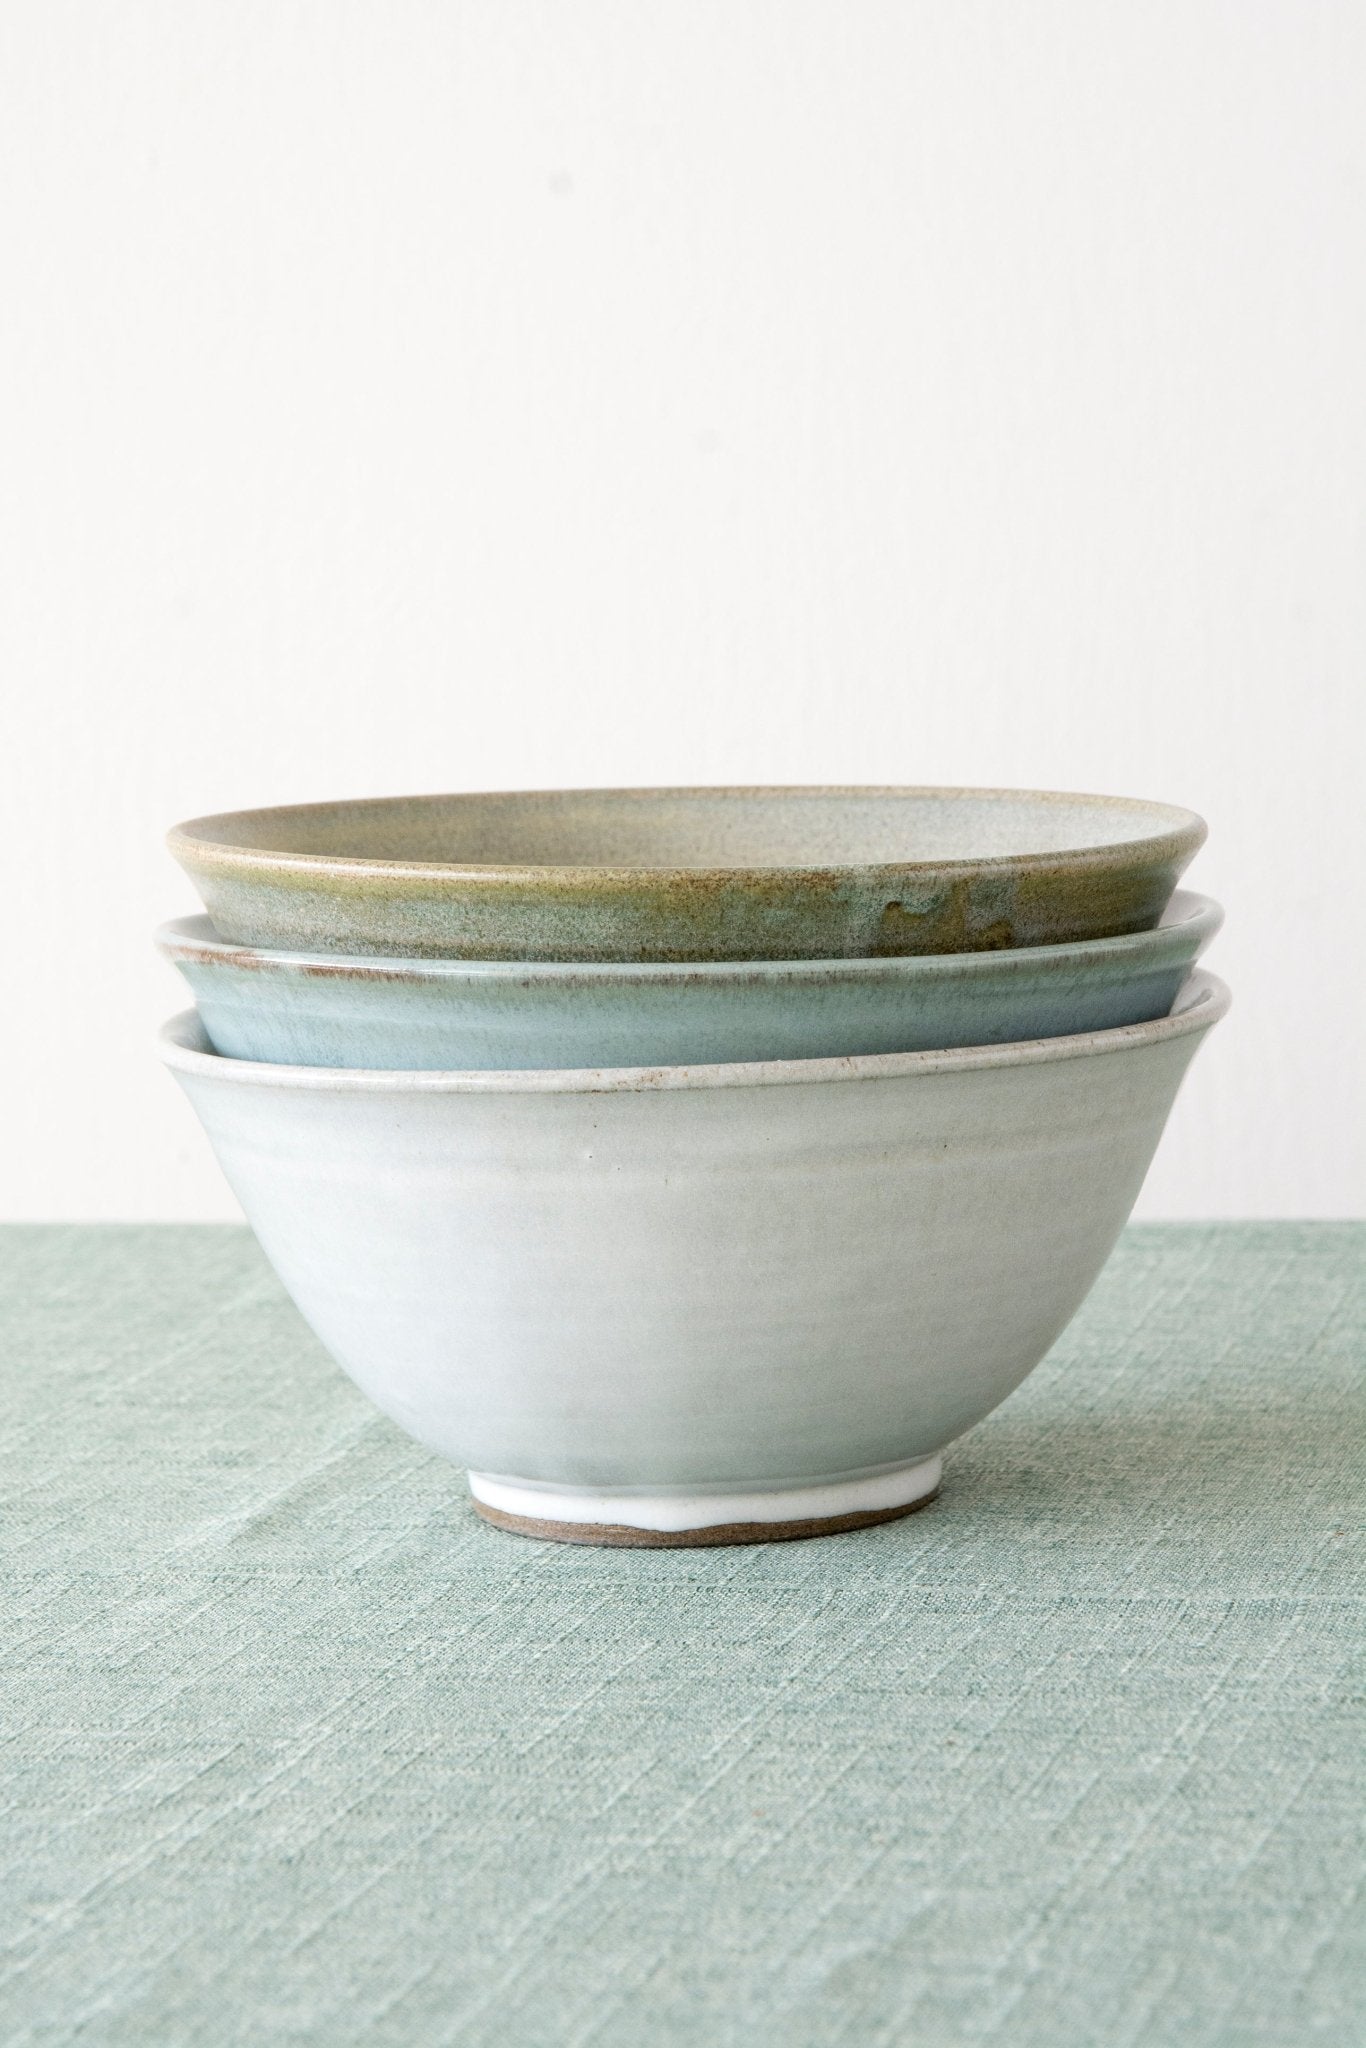 Ceramic Ramen Noodles Bowls - Mad About Pottery- Bowl